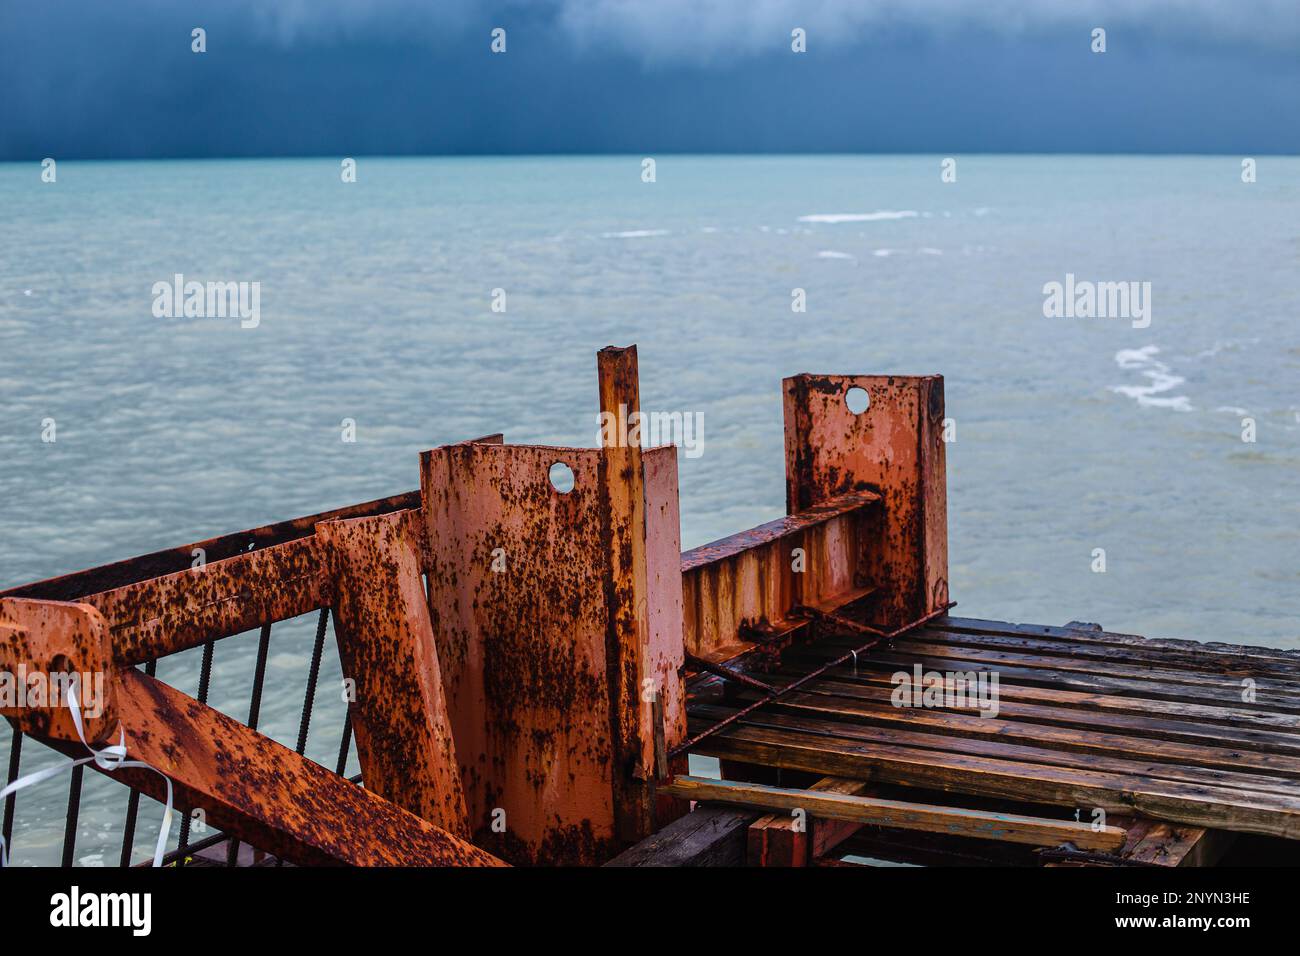 Alter rostiger Pier und stimmungsvolles stürmisches Meer mit einer satten blauen Farbe von Wasser und Wolken. Minimalistische Sturmlandschaft Stockfoto